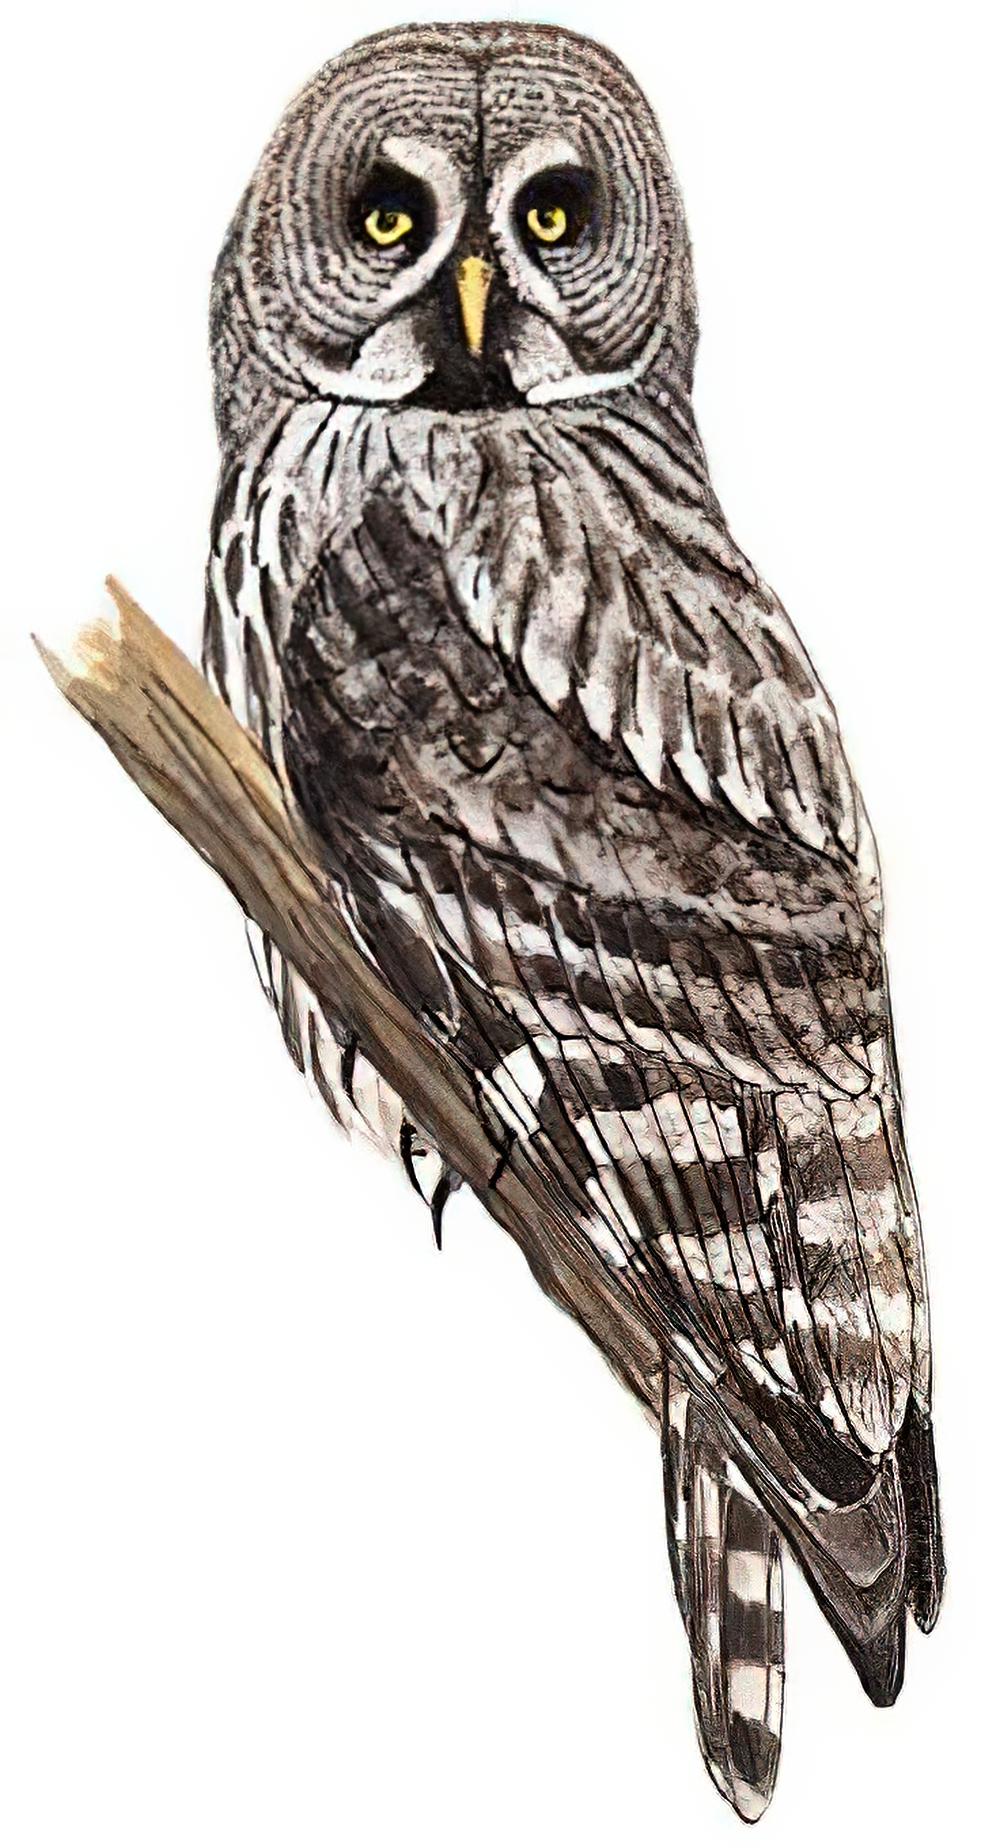 乌林鸮 / Great Grey Owl / Strix nebulosa